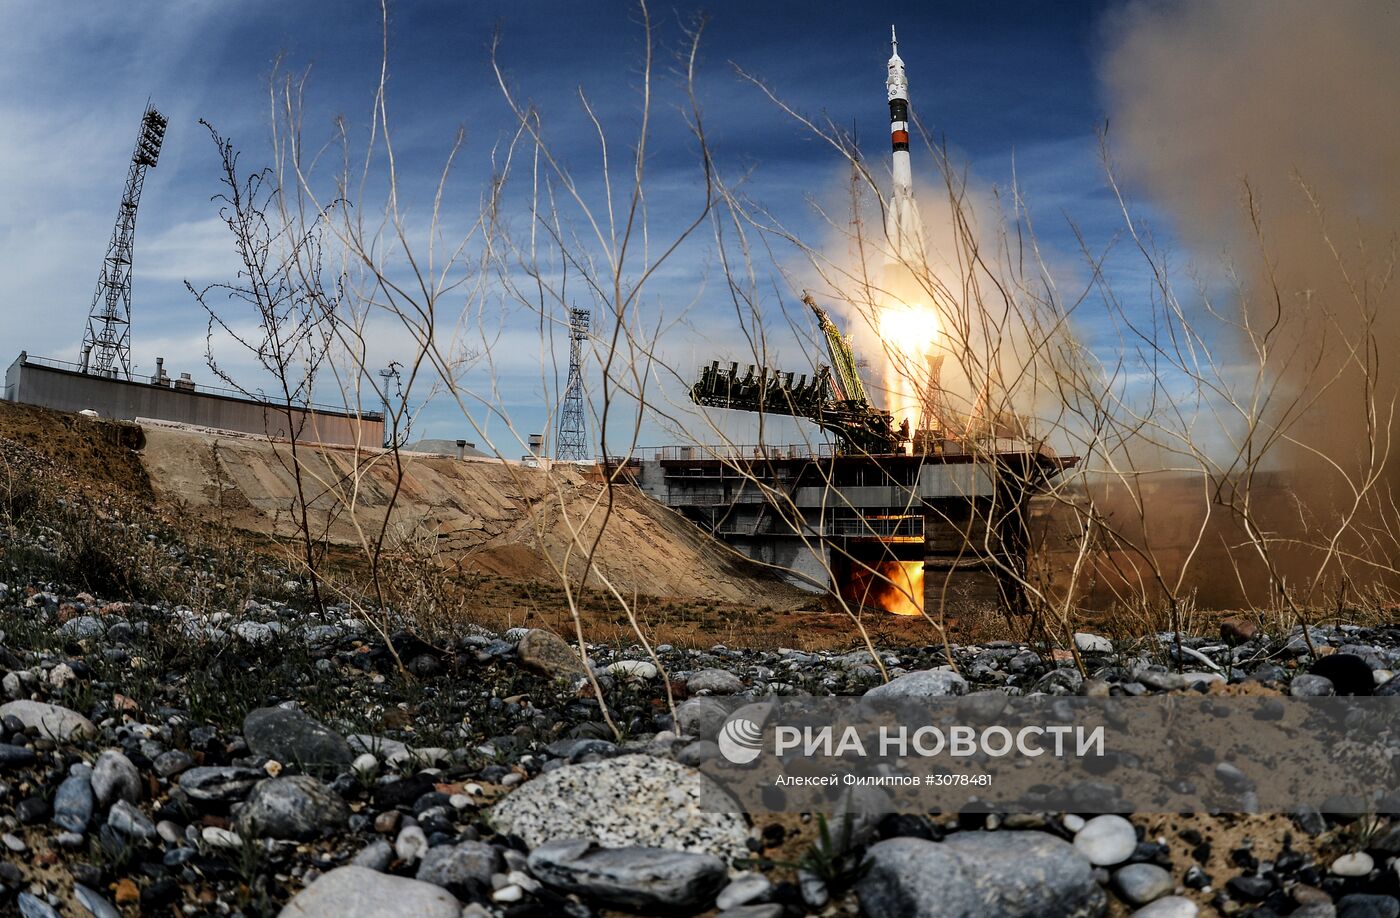 Пуск ракеты-носителя "Союз-ФГ" с ТПК "Союз- МС-04" с космодрома Байконур